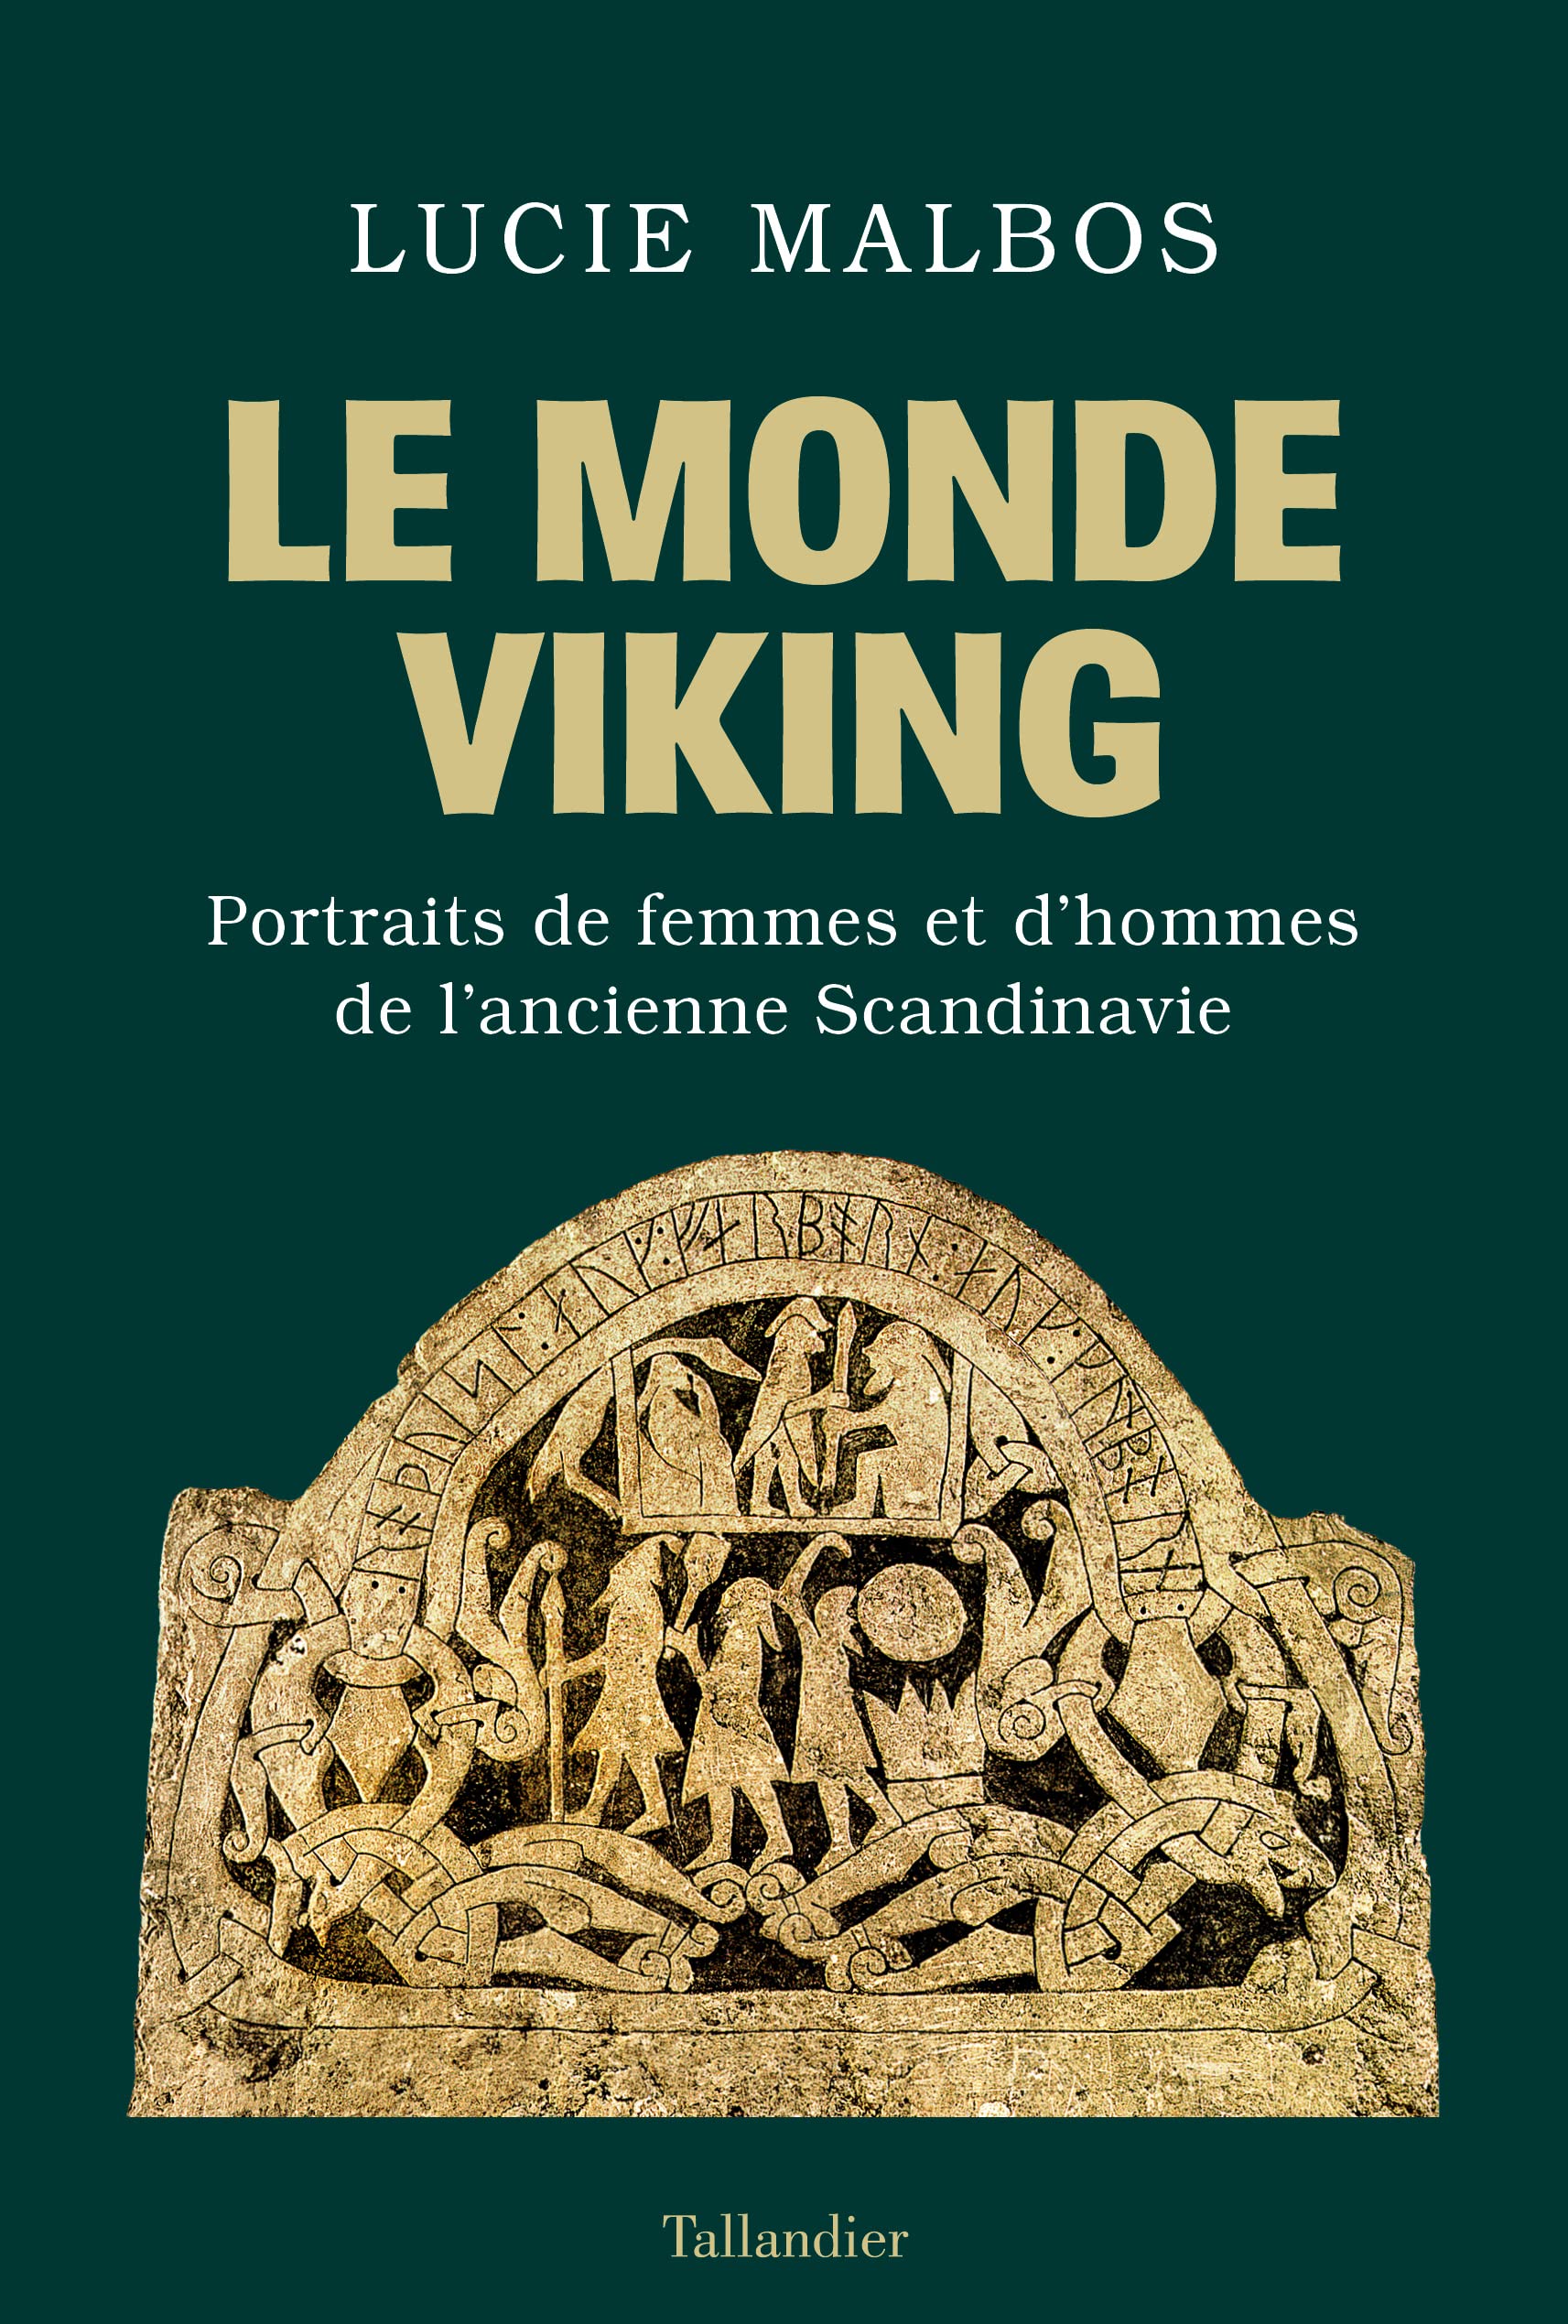 Le Monde Viking. Portraits de femmes et d'hommes de l'ancienne Scandinavie, 2022, 352 p.